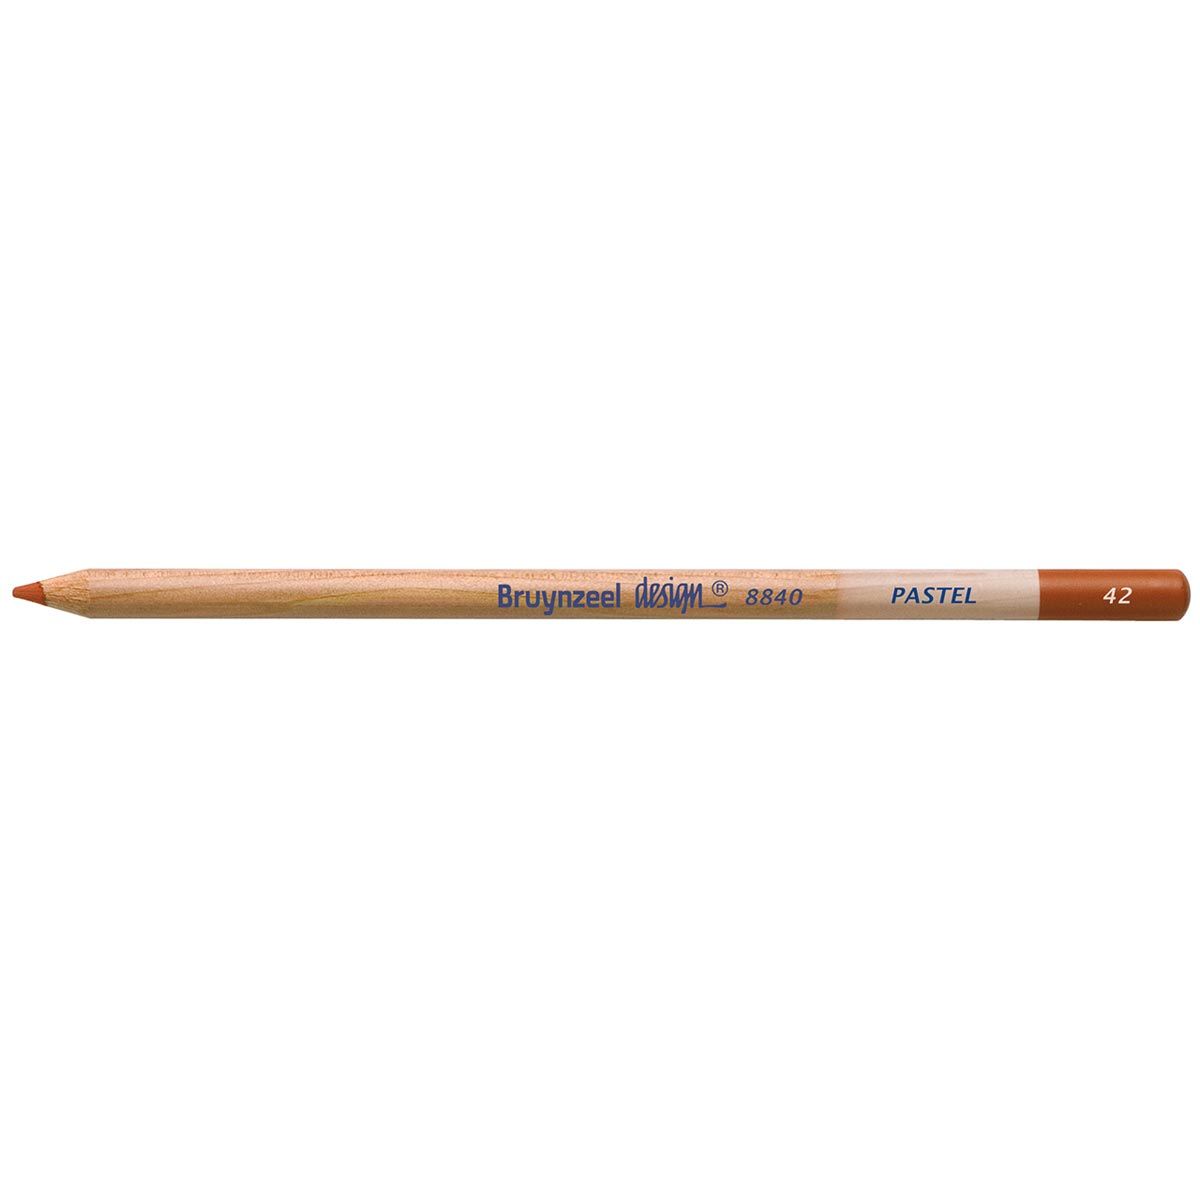 Bruynzeel Design Pastel Pencil - Sienna 42